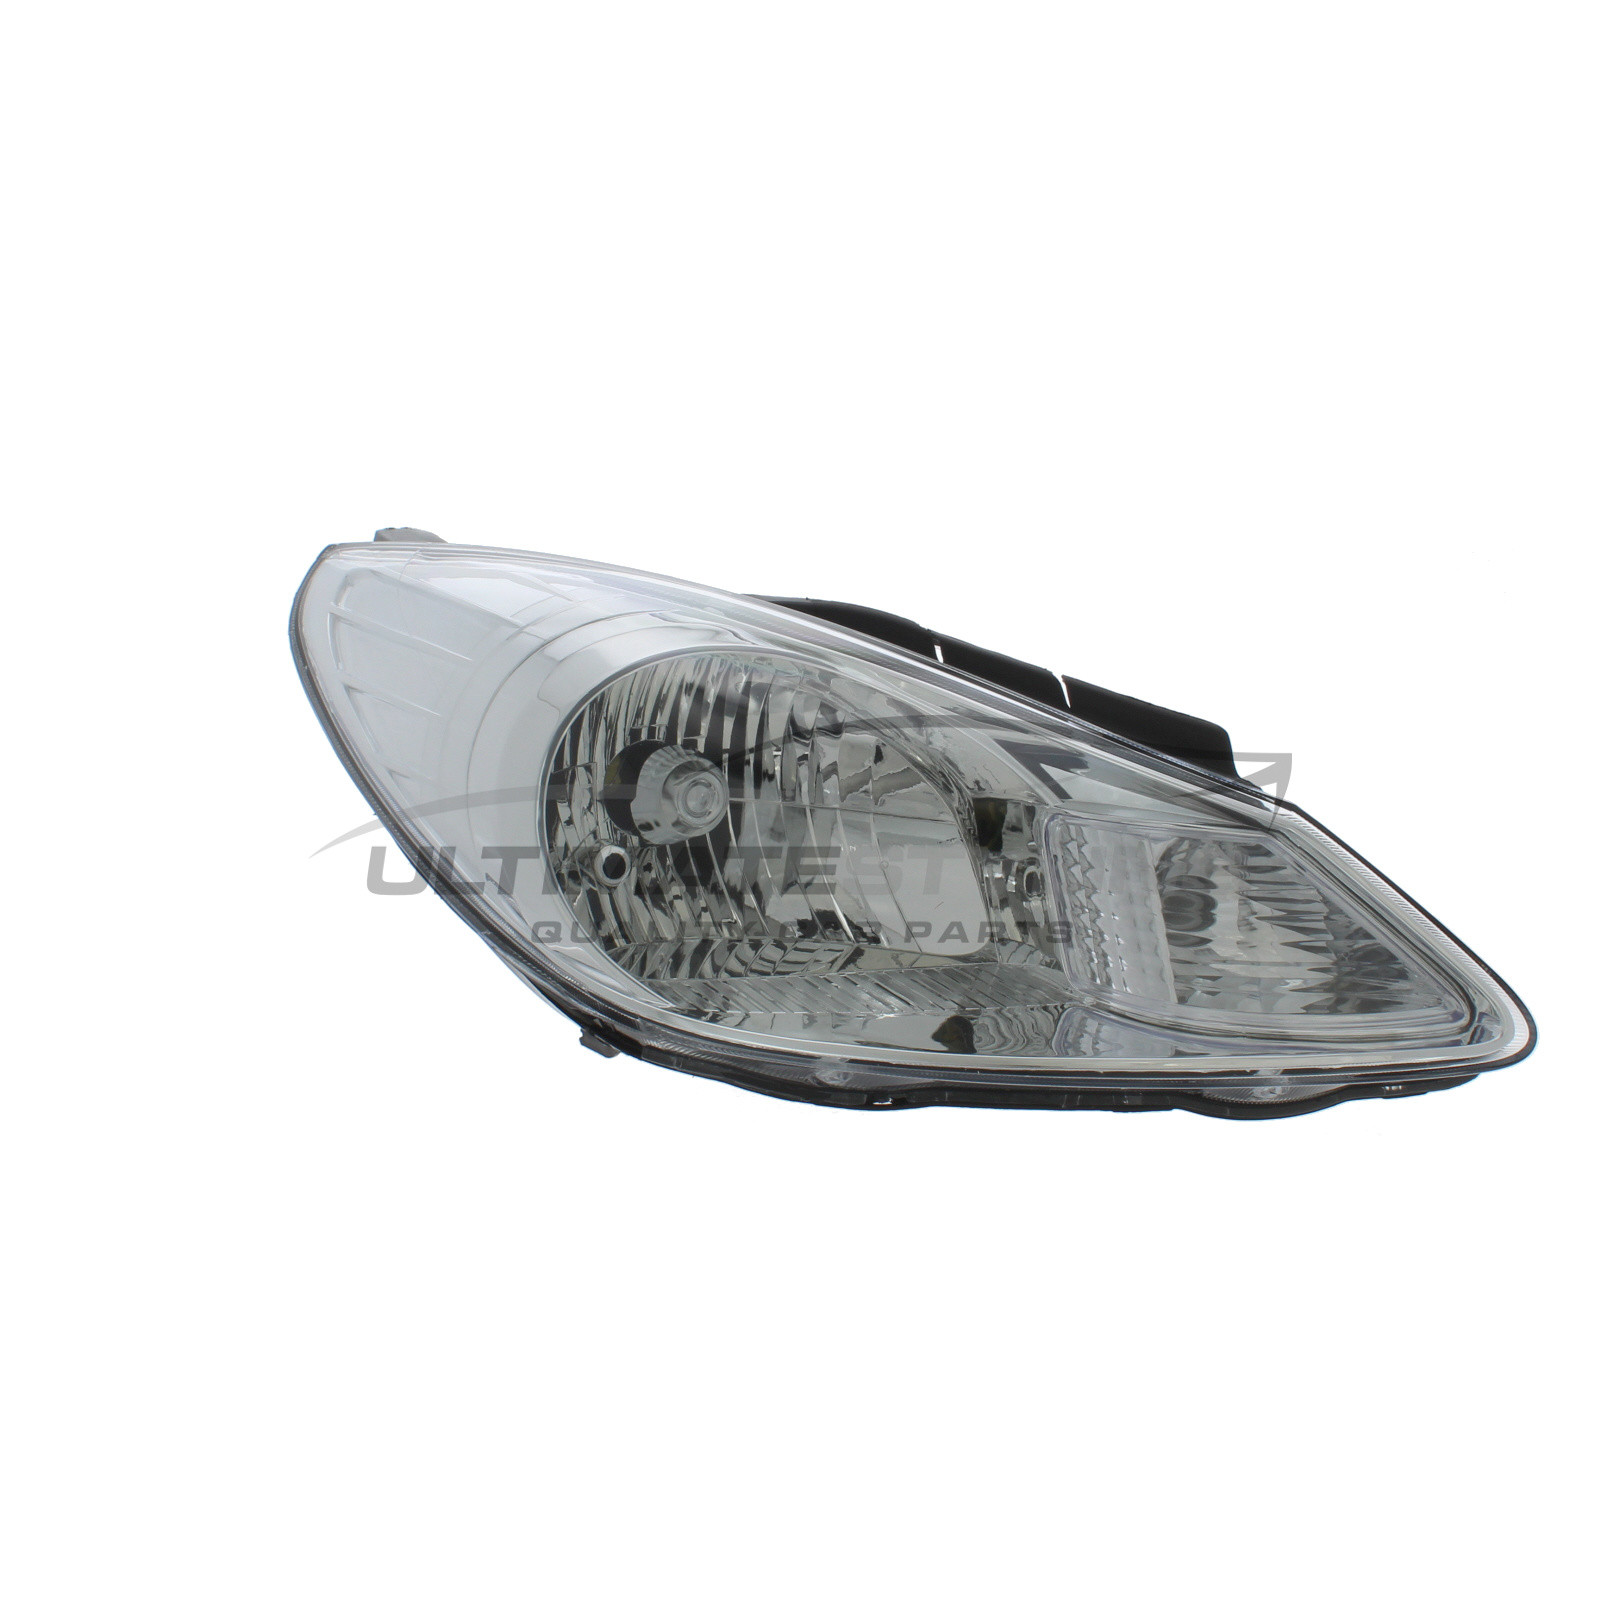 Headlight / Headlamp for Hyundai i10